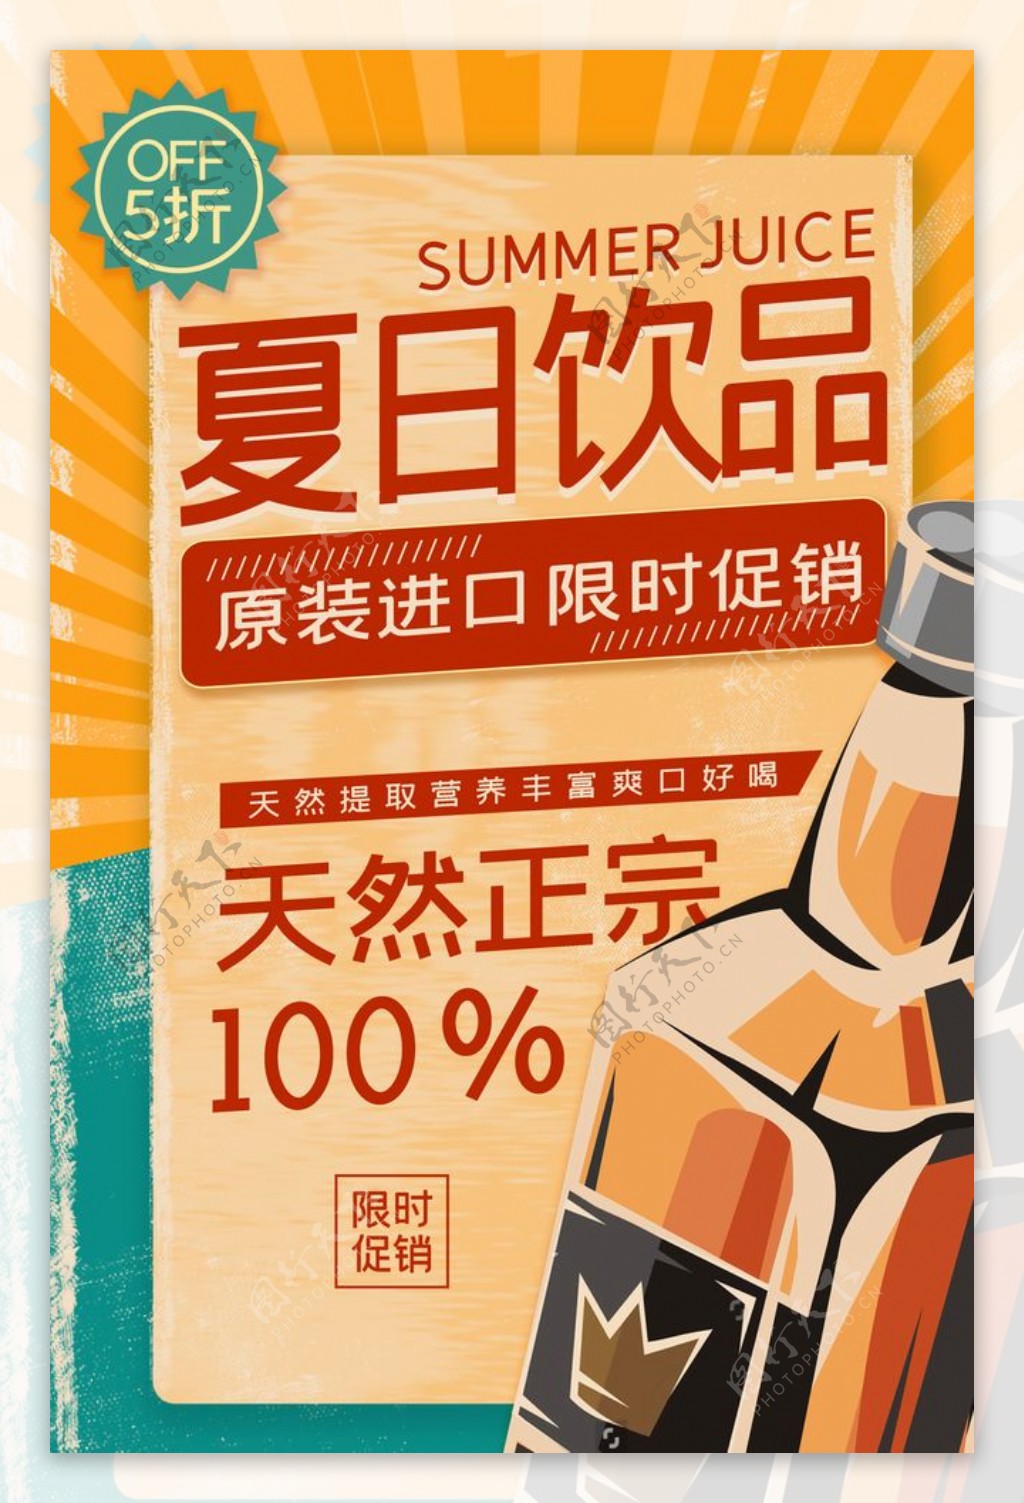 夏日饮品优惠活动宣传海报素材图片